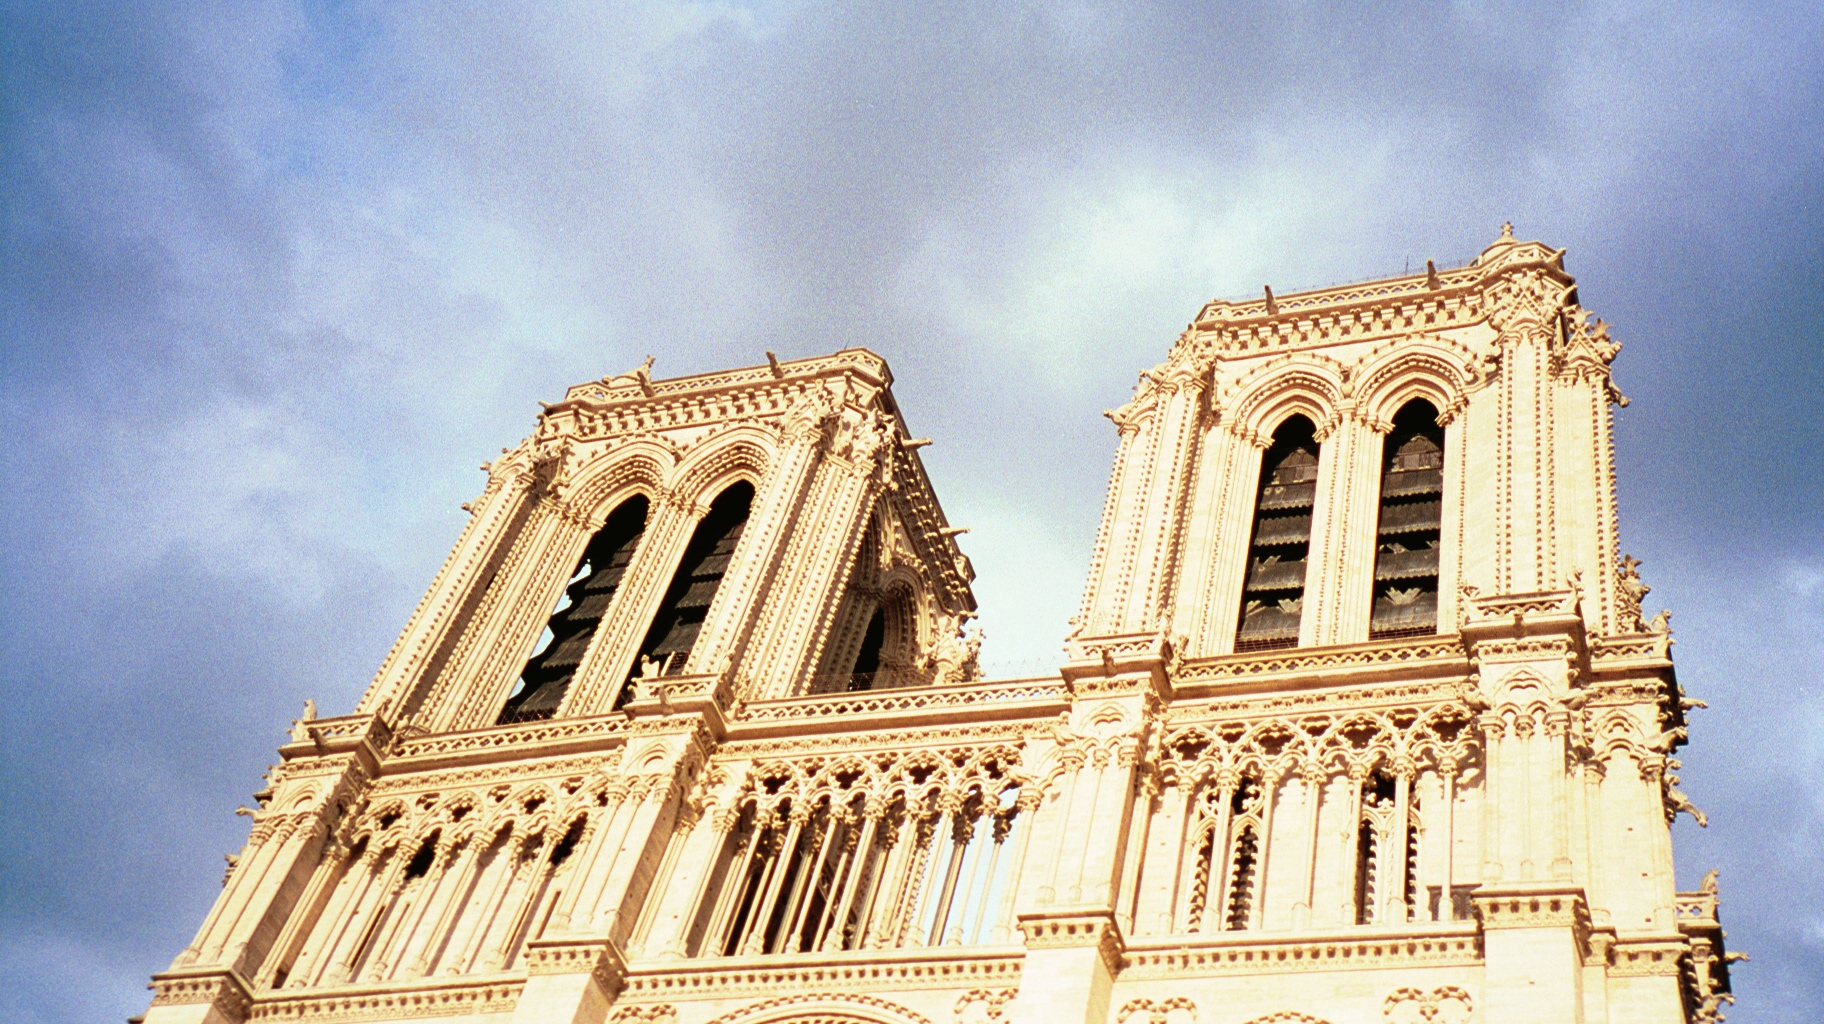 Notre Dame, paris